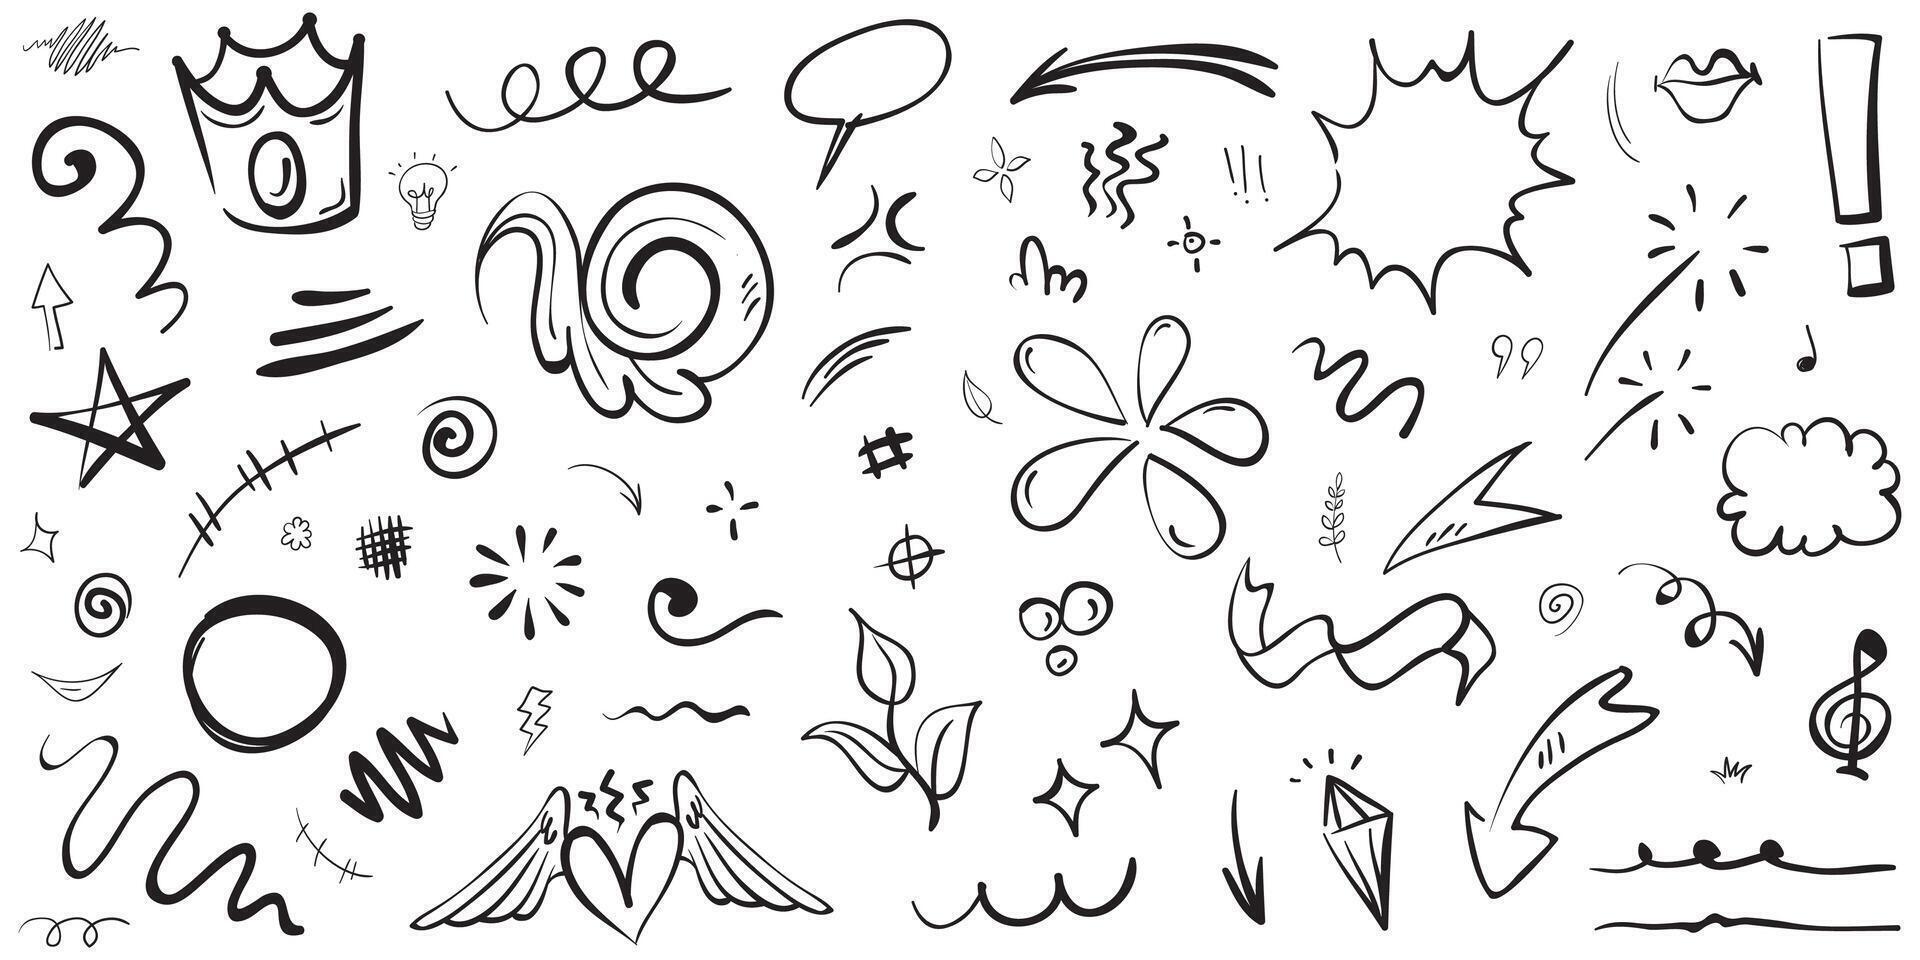 Vektorset von handgezeichneten Cartoony-Ausdruckszeichen-Doodle, Kurvenrichtungspfeilen, Emoticon-Effekt-Designelementen, Cartoon-Charakter-Emotionssymbolen, niedlichen dekorativen Pinselstrichlinien. vektor